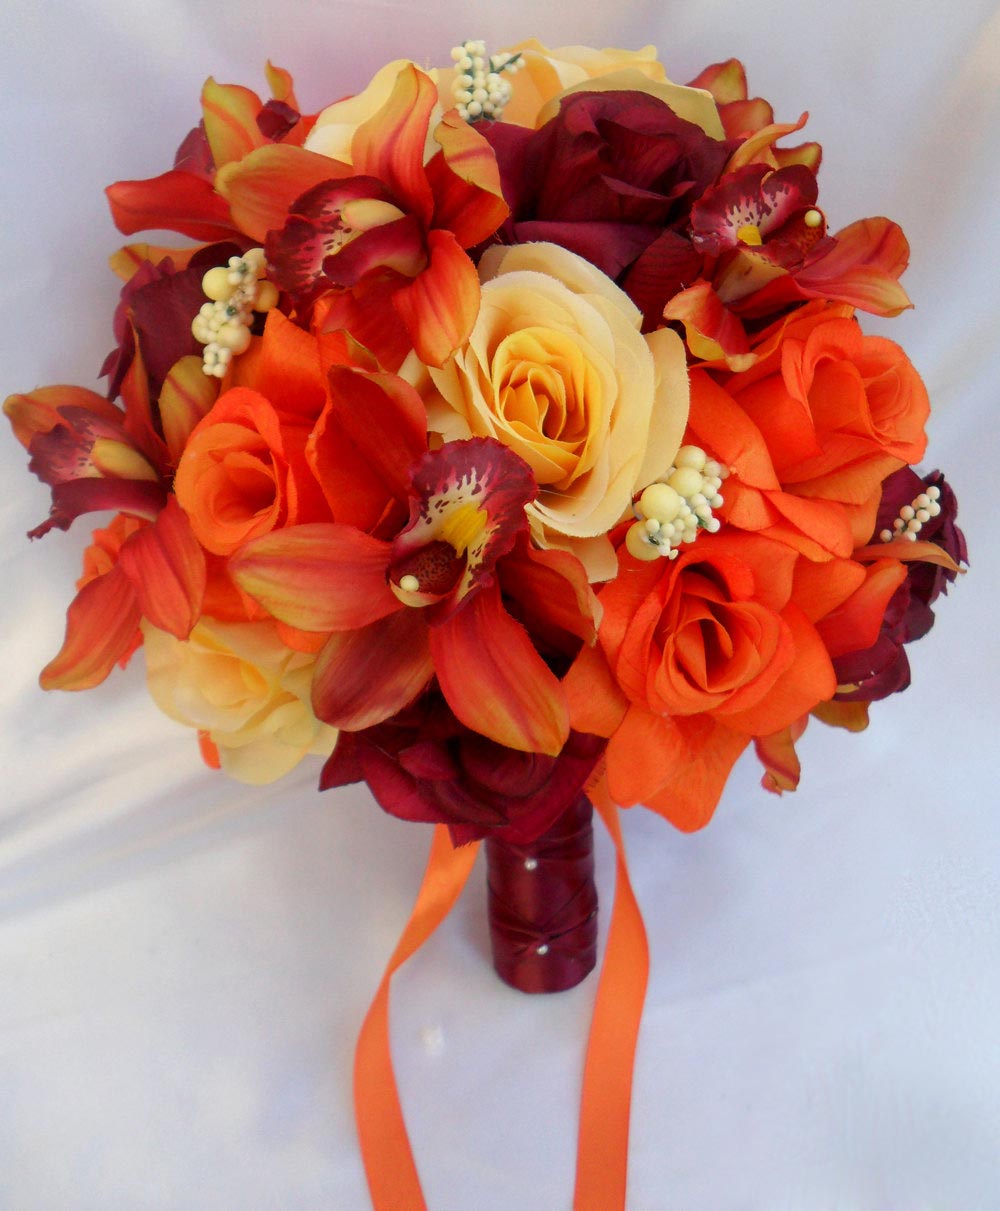 Hoa cưới cầm tay màu cam kết từ hoa địa lan